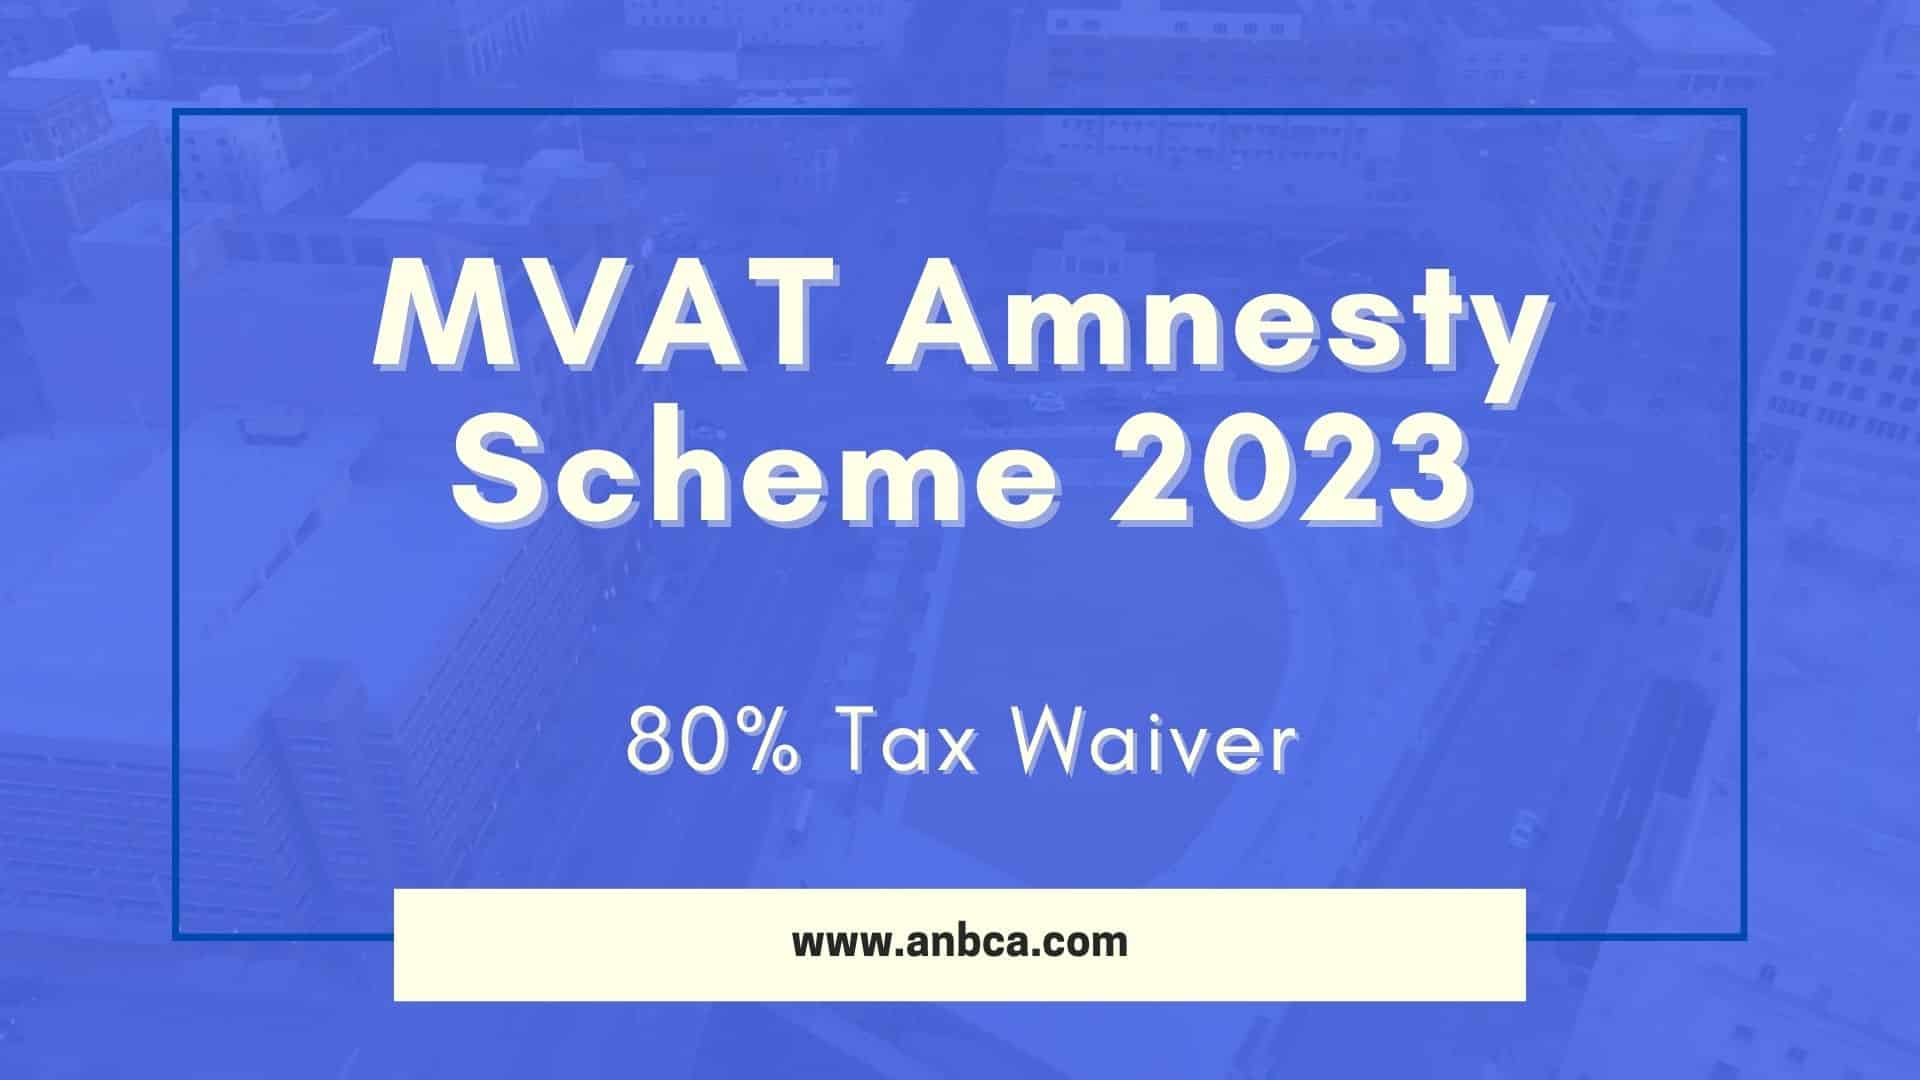 MVAT Amnesty Scheme 2023